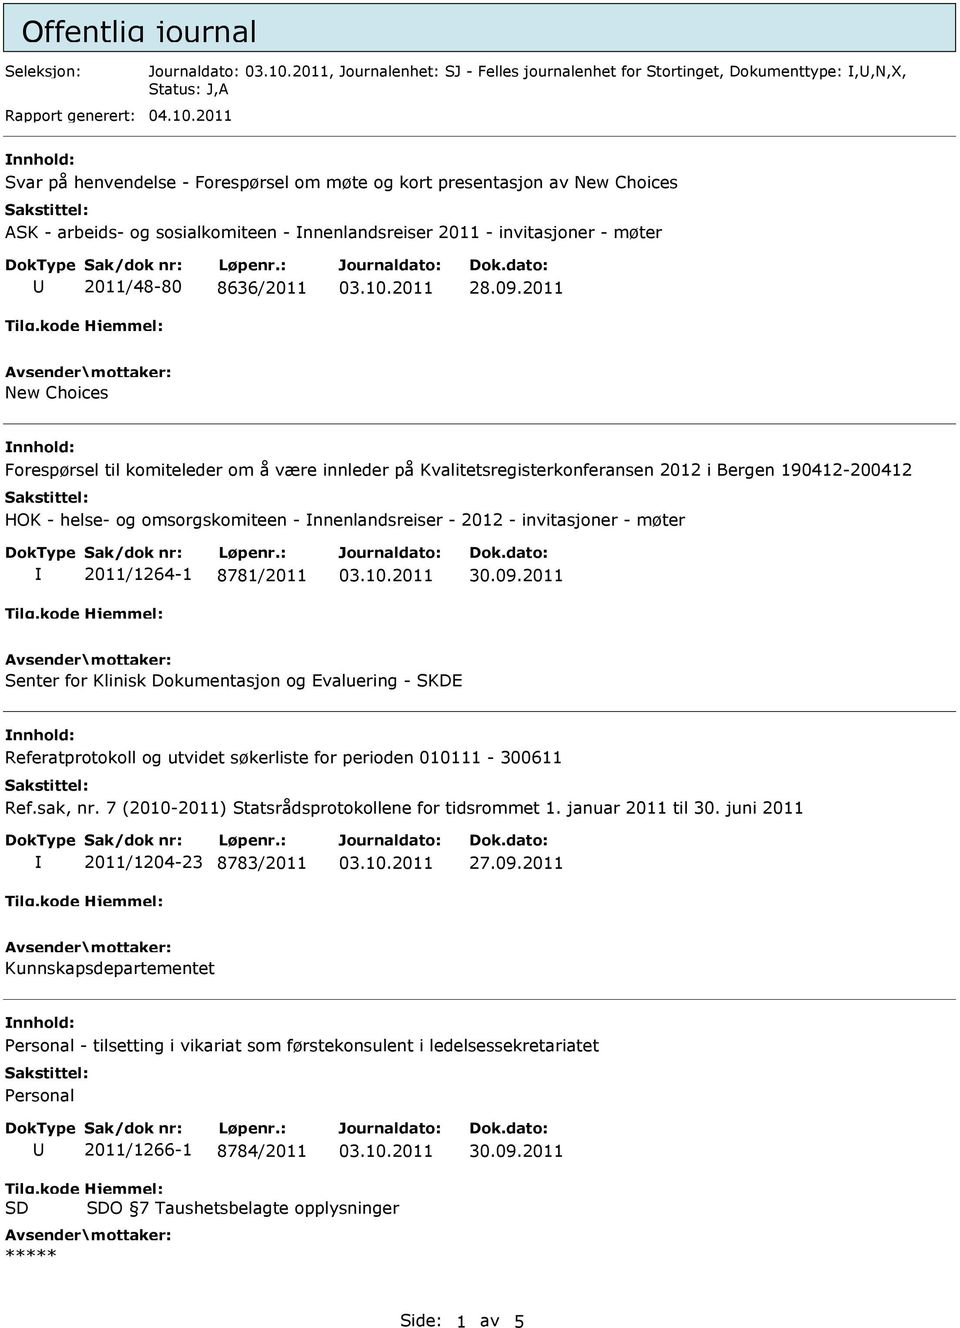 2011 New Choices nnhold: Forespørsel til komiteleder om å være innleder på Kvalitetsregisterkonferansen 2012 i Bergen 190412-200412 HOK - helse- og omsorgskomiteen - nnenlandsreiser - 2012 -